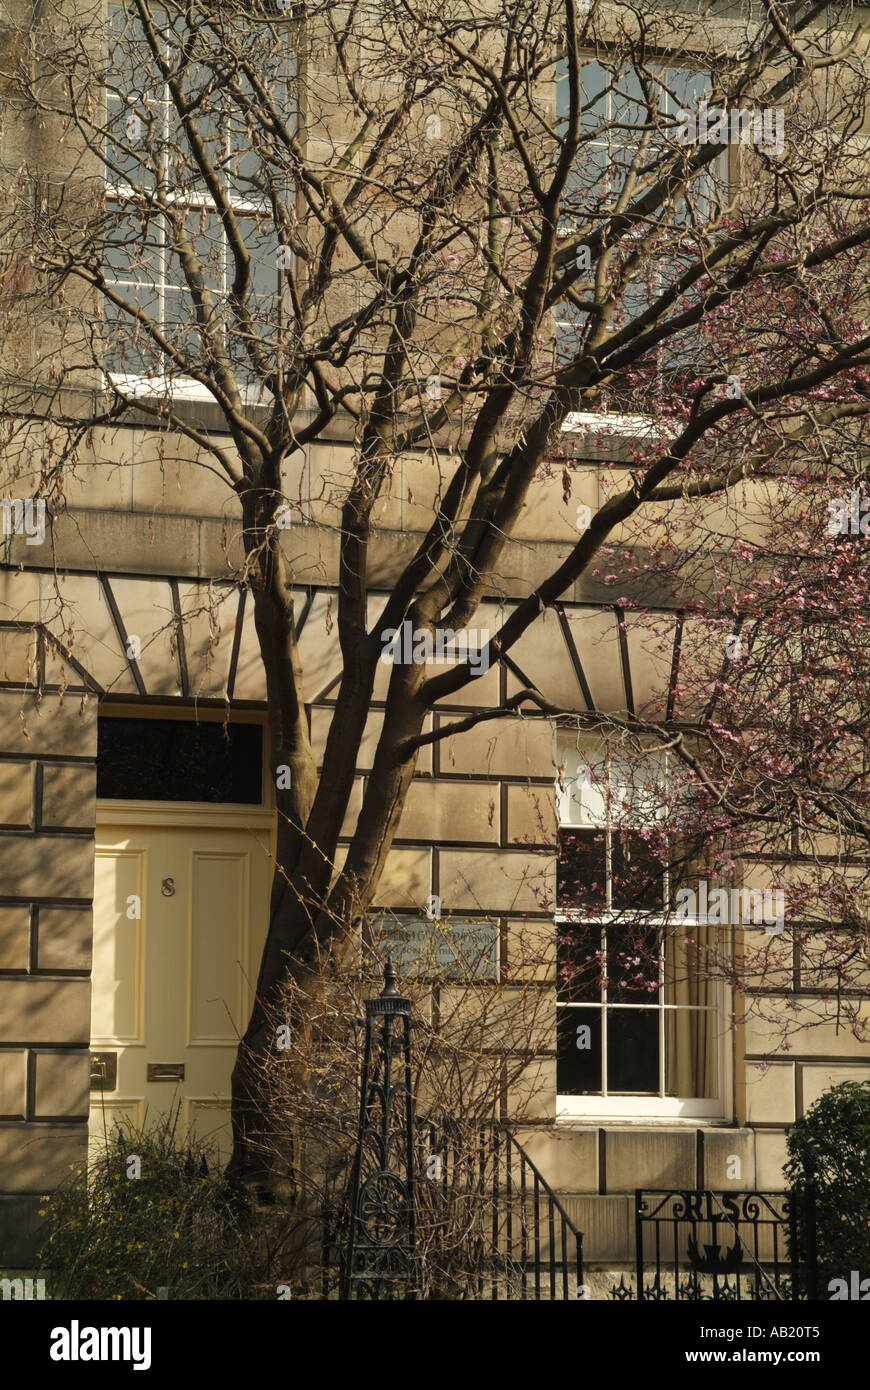 Le lieu de naissance de Robert Louis Stevenson (1850-1894) à 8, Place Howard Canonmills, Édimbourg, Écosse, Royaume-Uni. Banque D'Images